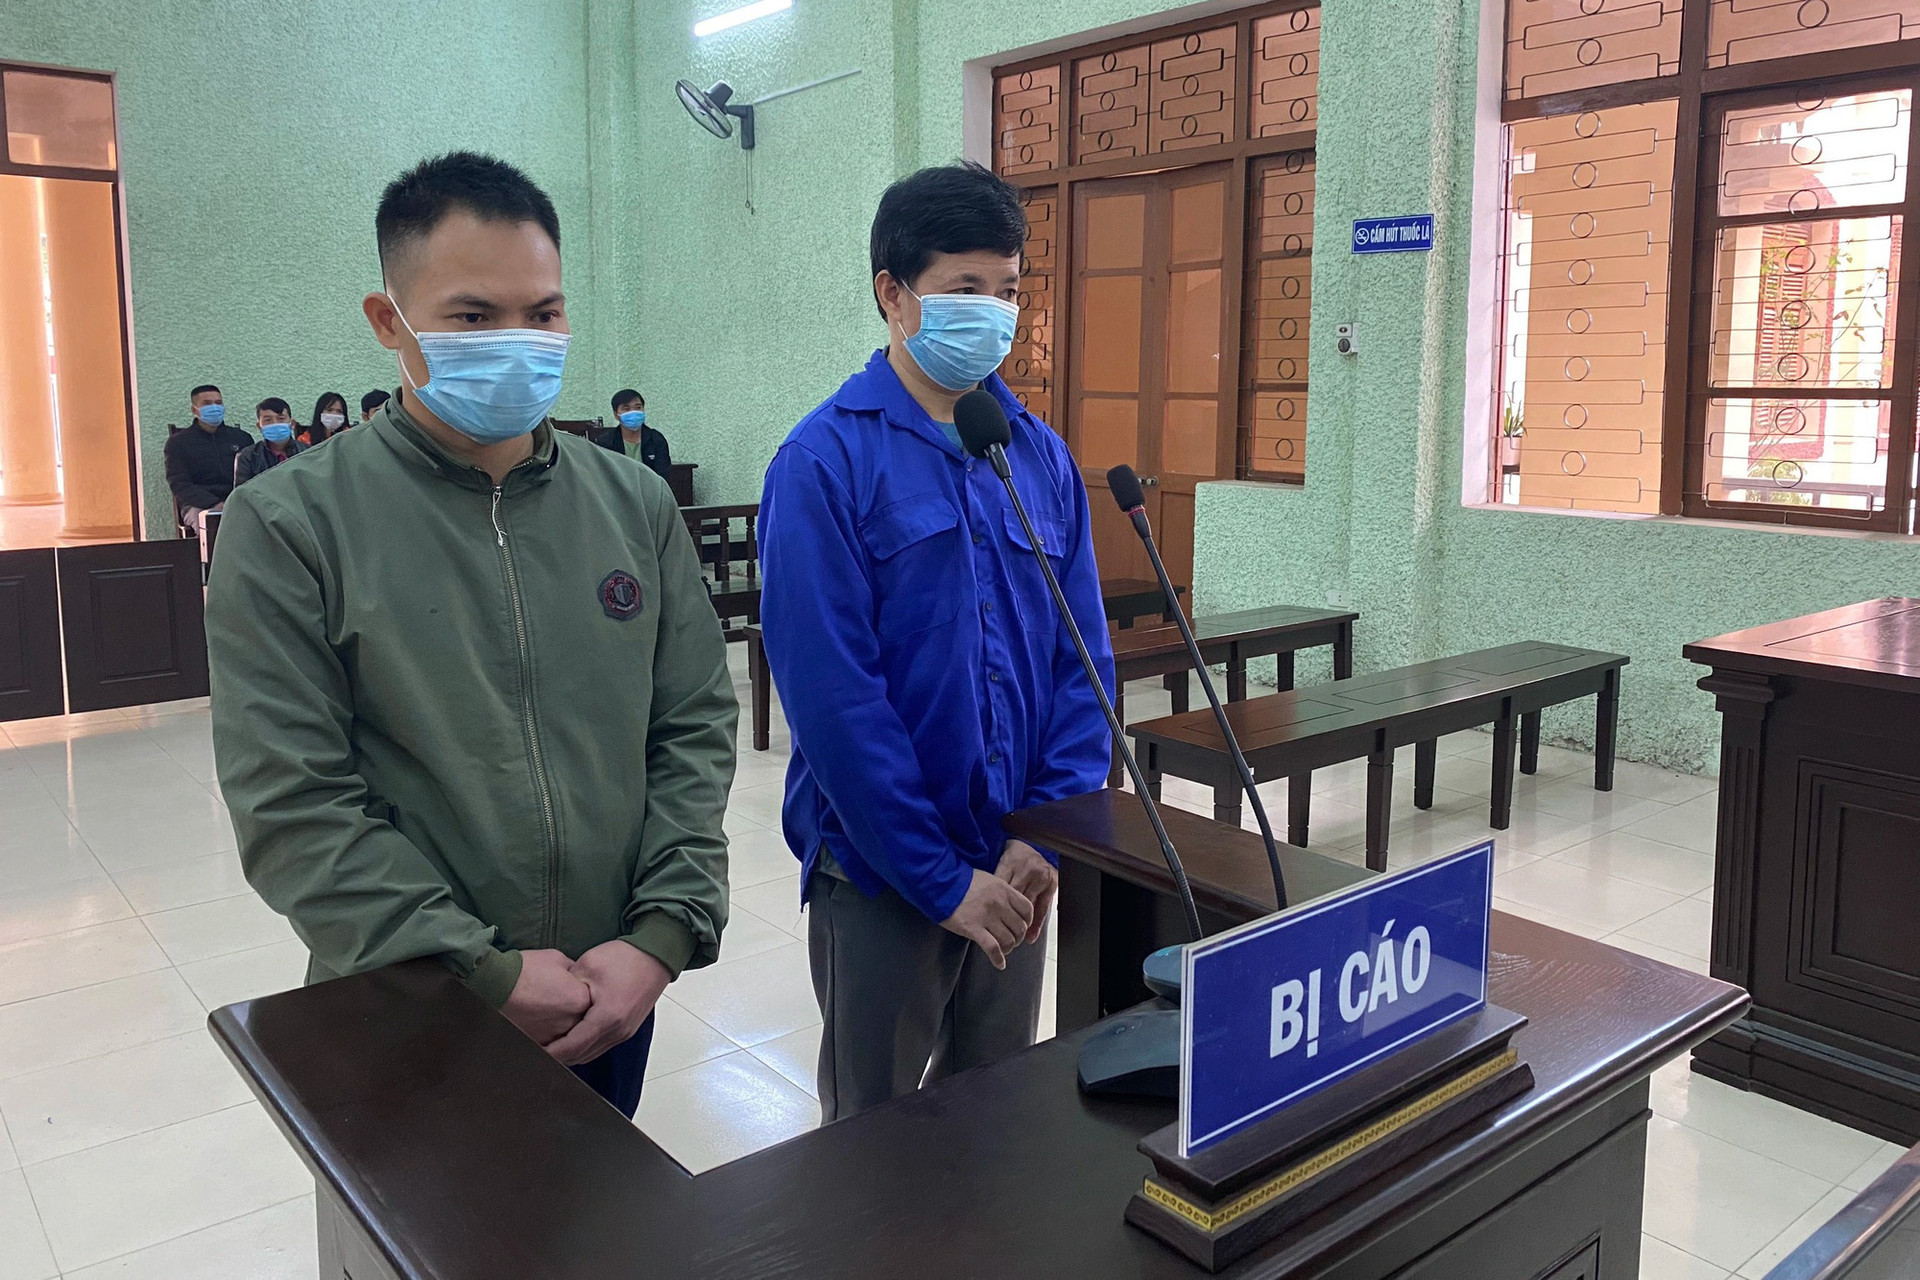 Lĩnh 18 năm tù vì đưa nhiều người Trung Quốc vào Việt Nam trái phép - Ảnh 2.